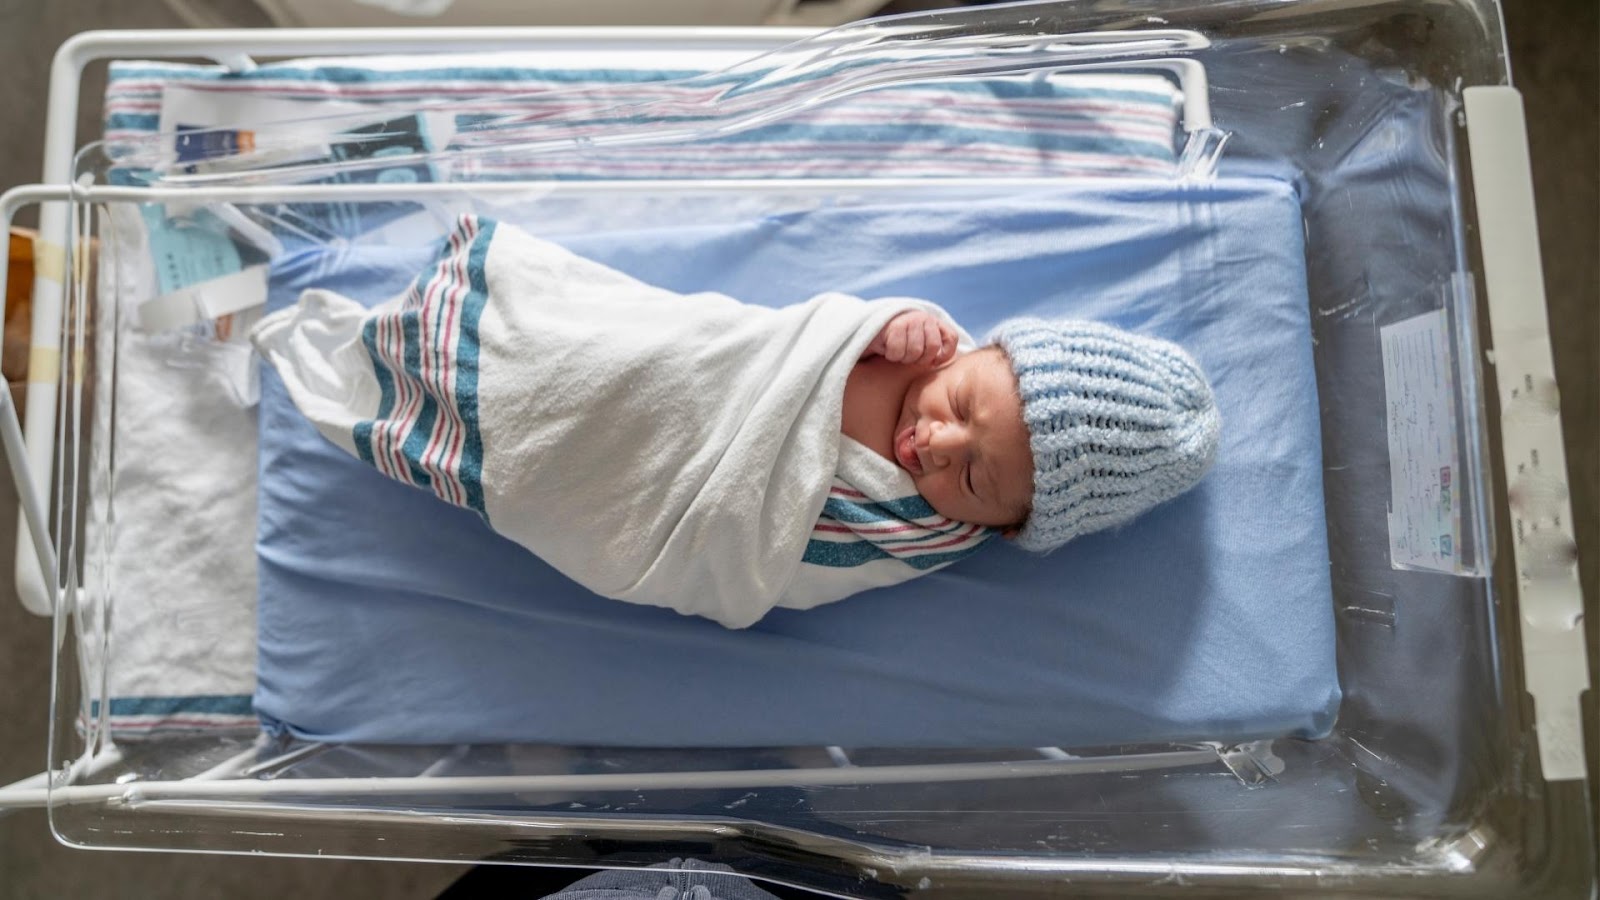 Cuidados maternos no pós-parto: algumas perguntas e repostas